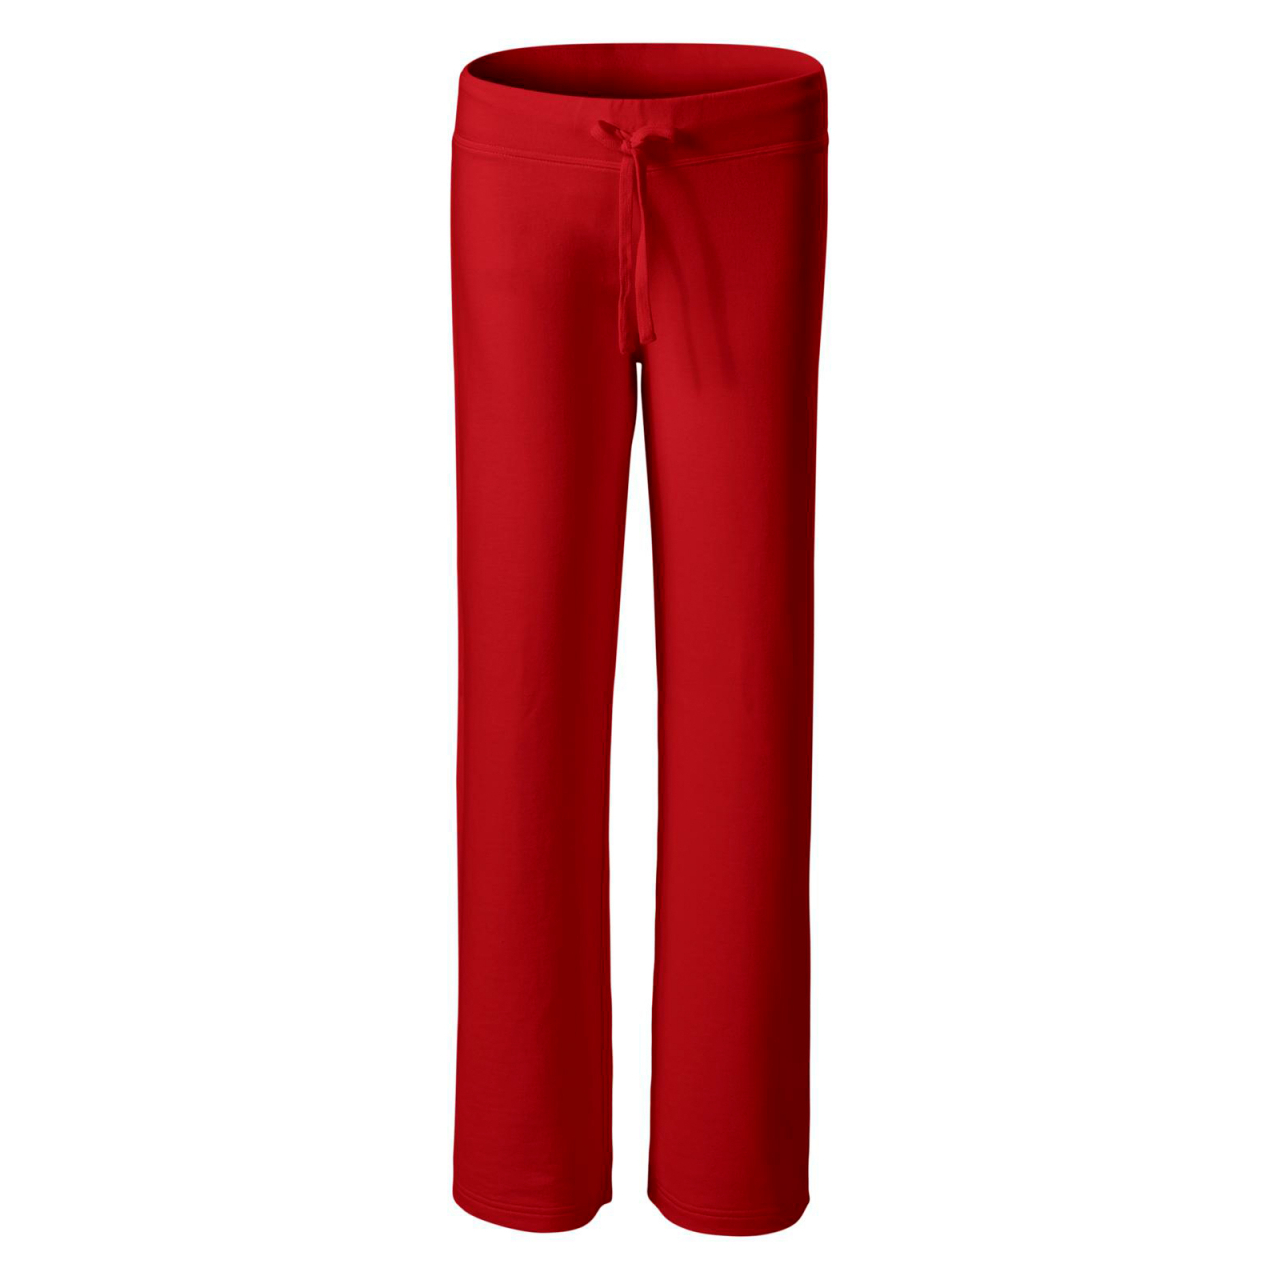 Tepláky dámské Malfini Comfort - červené, XL